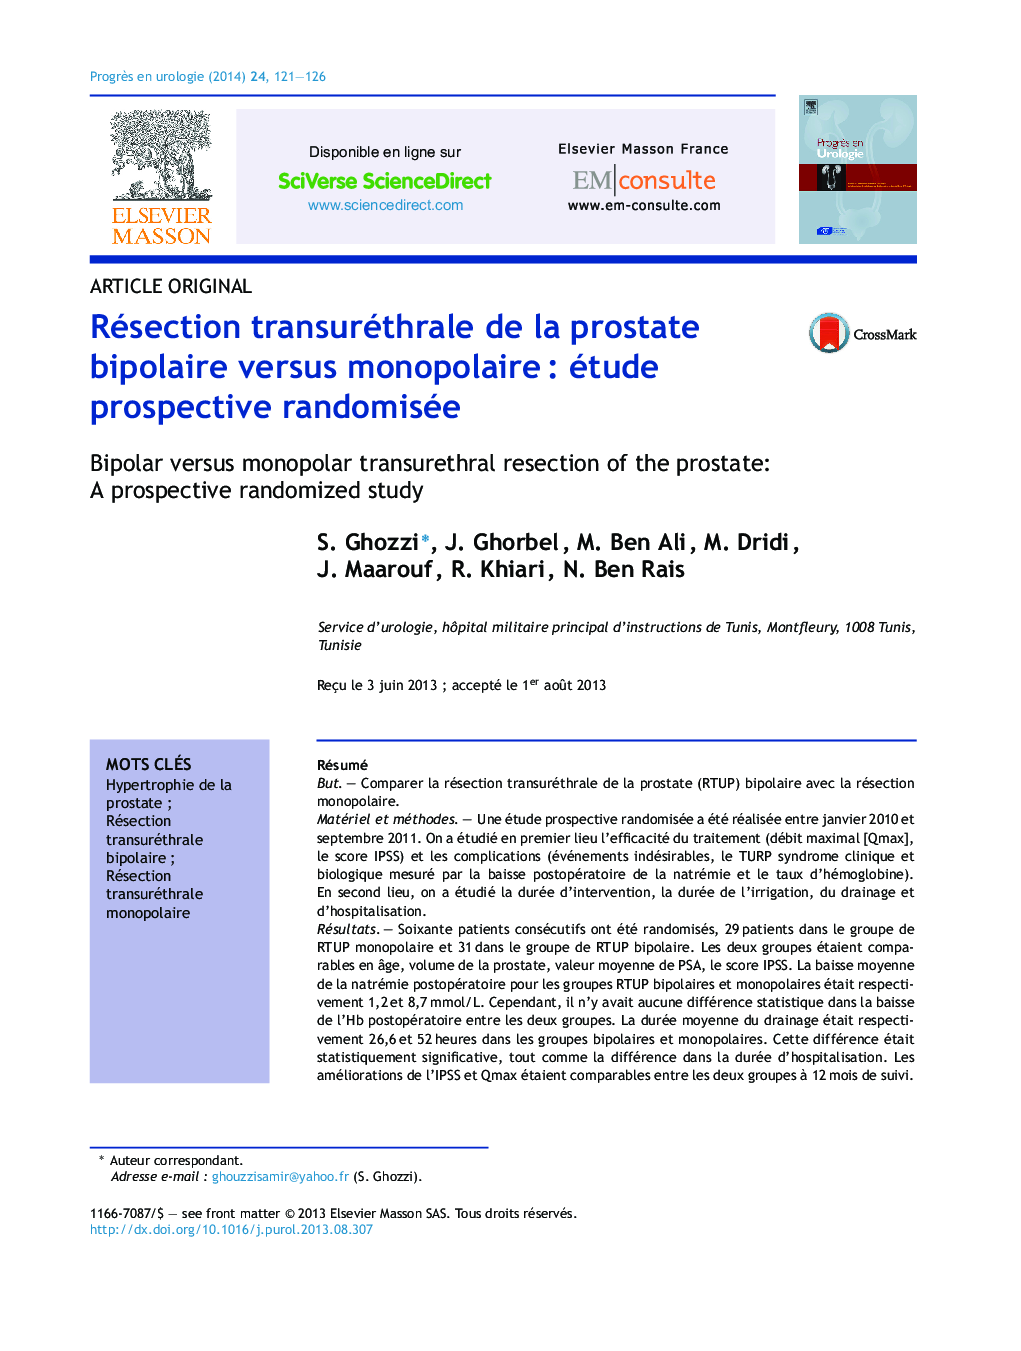 Résection transuréthrale de la prostate bipolaire versus monopolaire : étude prospective randomisée